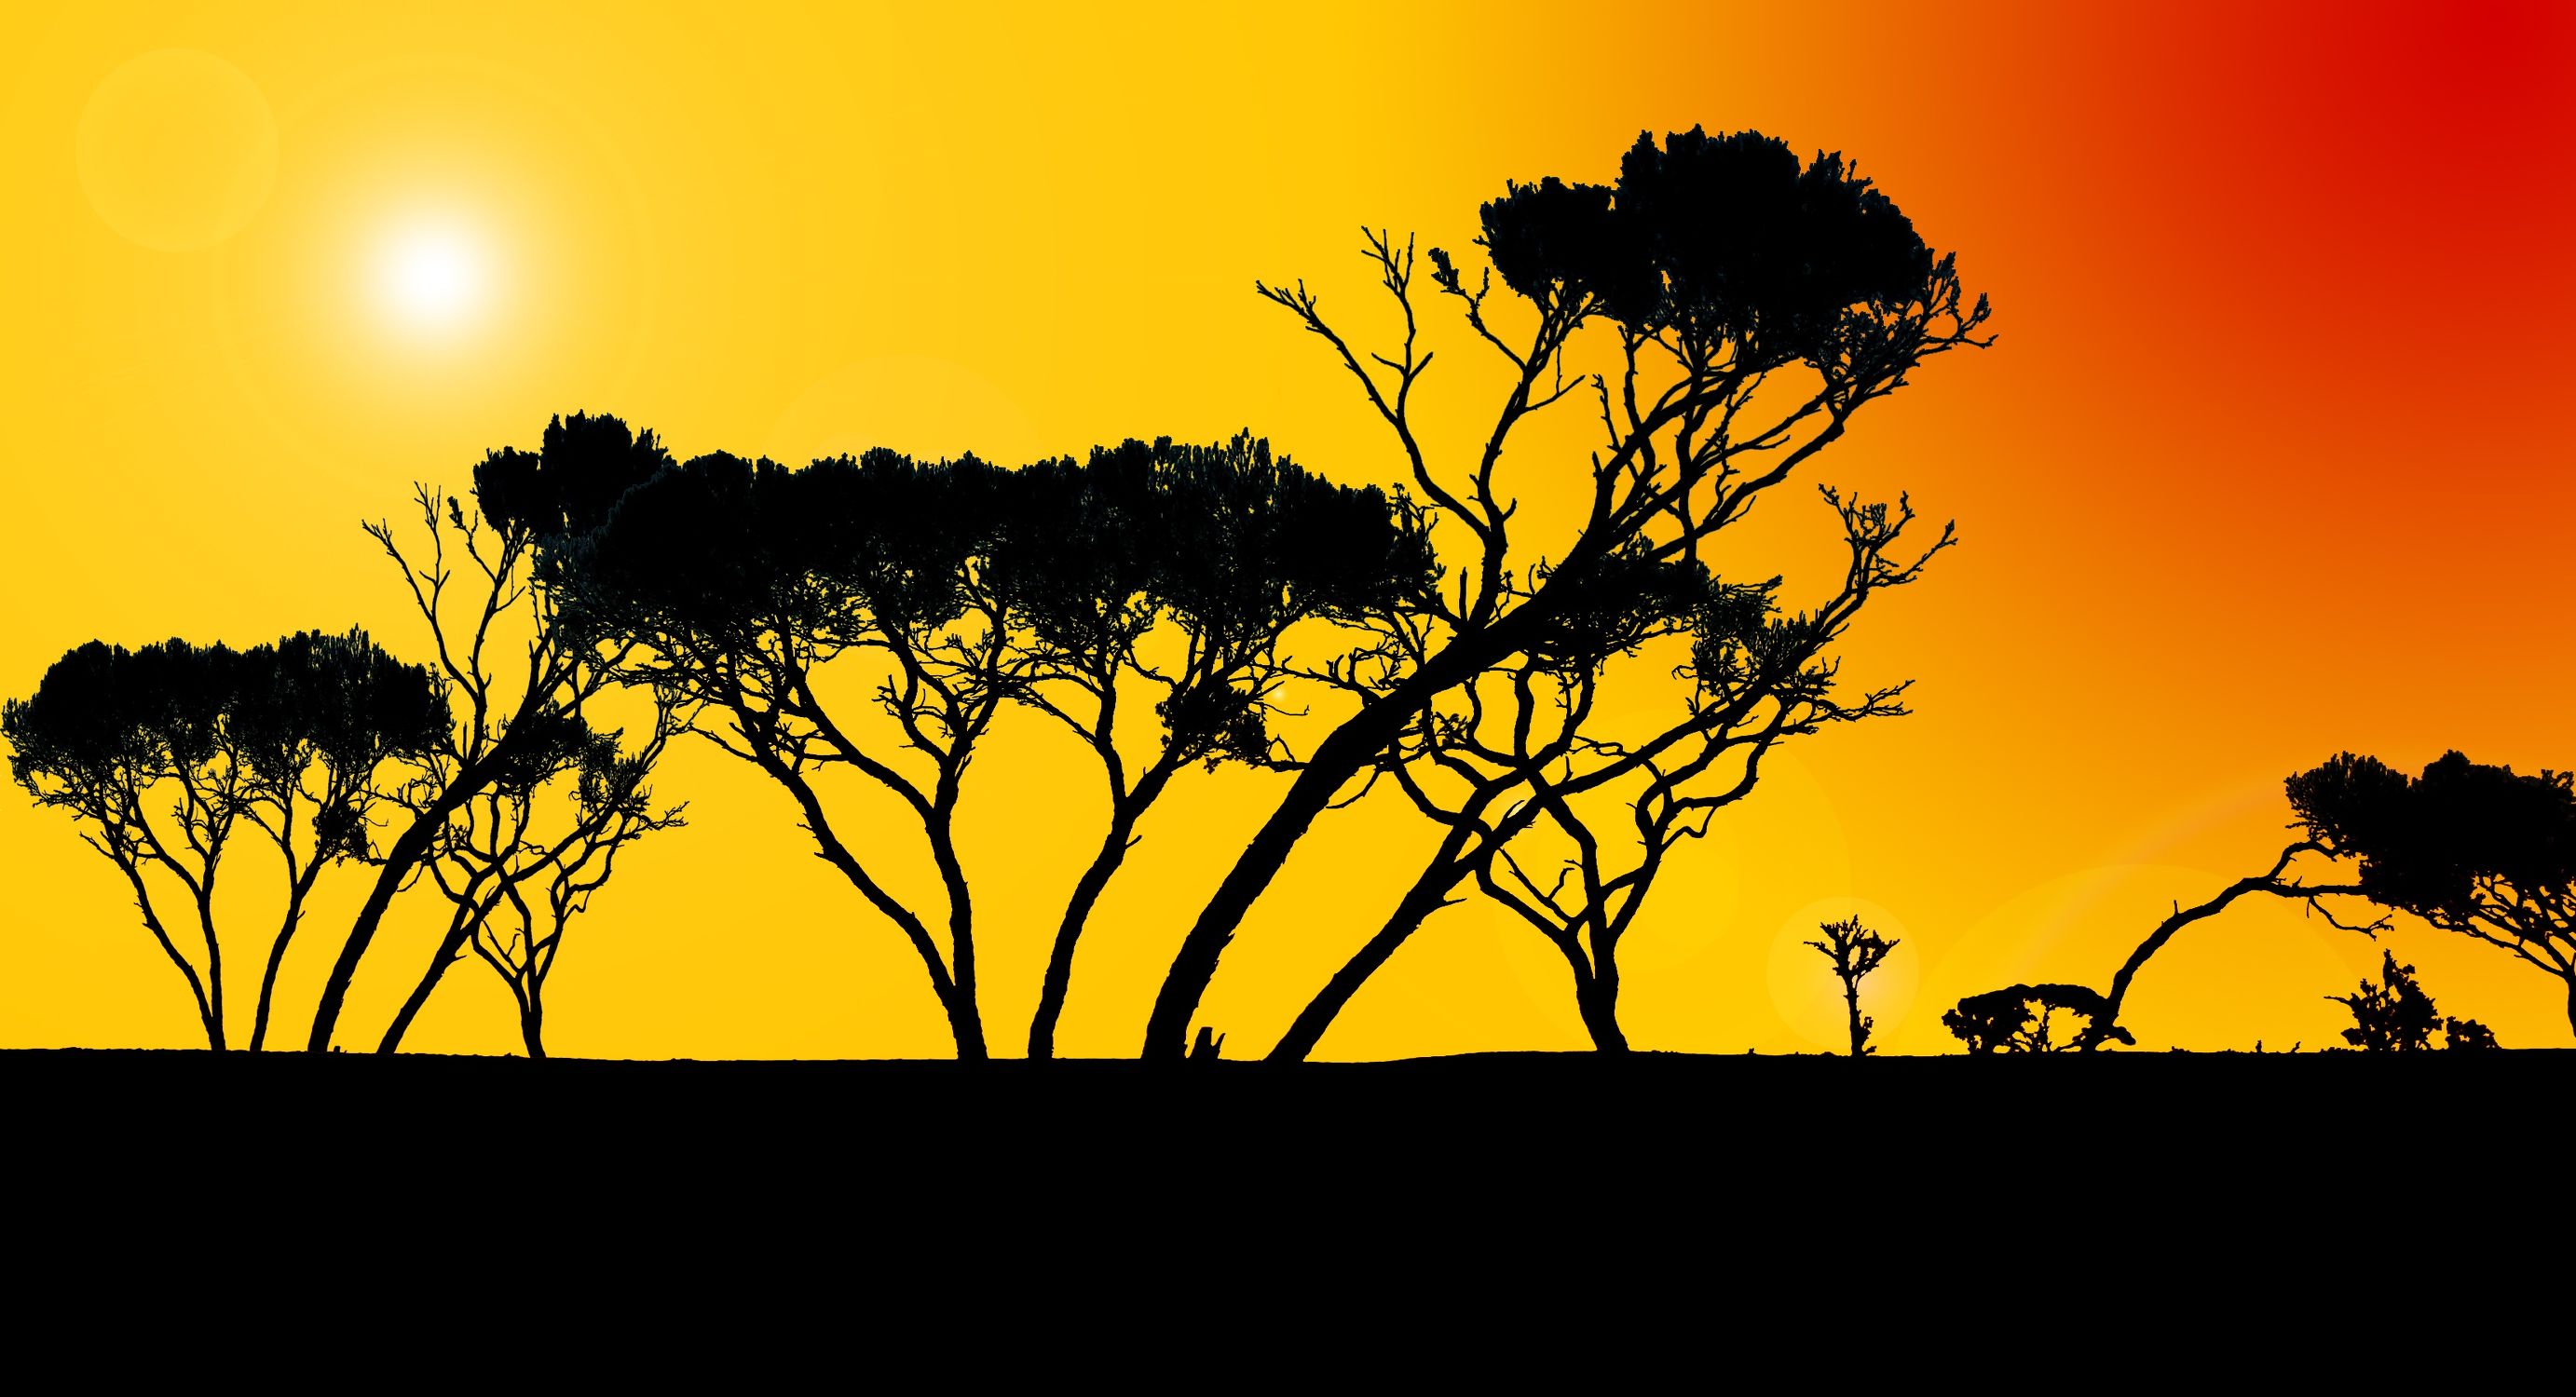 Bild mit Afrika, Illustrationen, Illustration Baum, Baummotiv, african Style